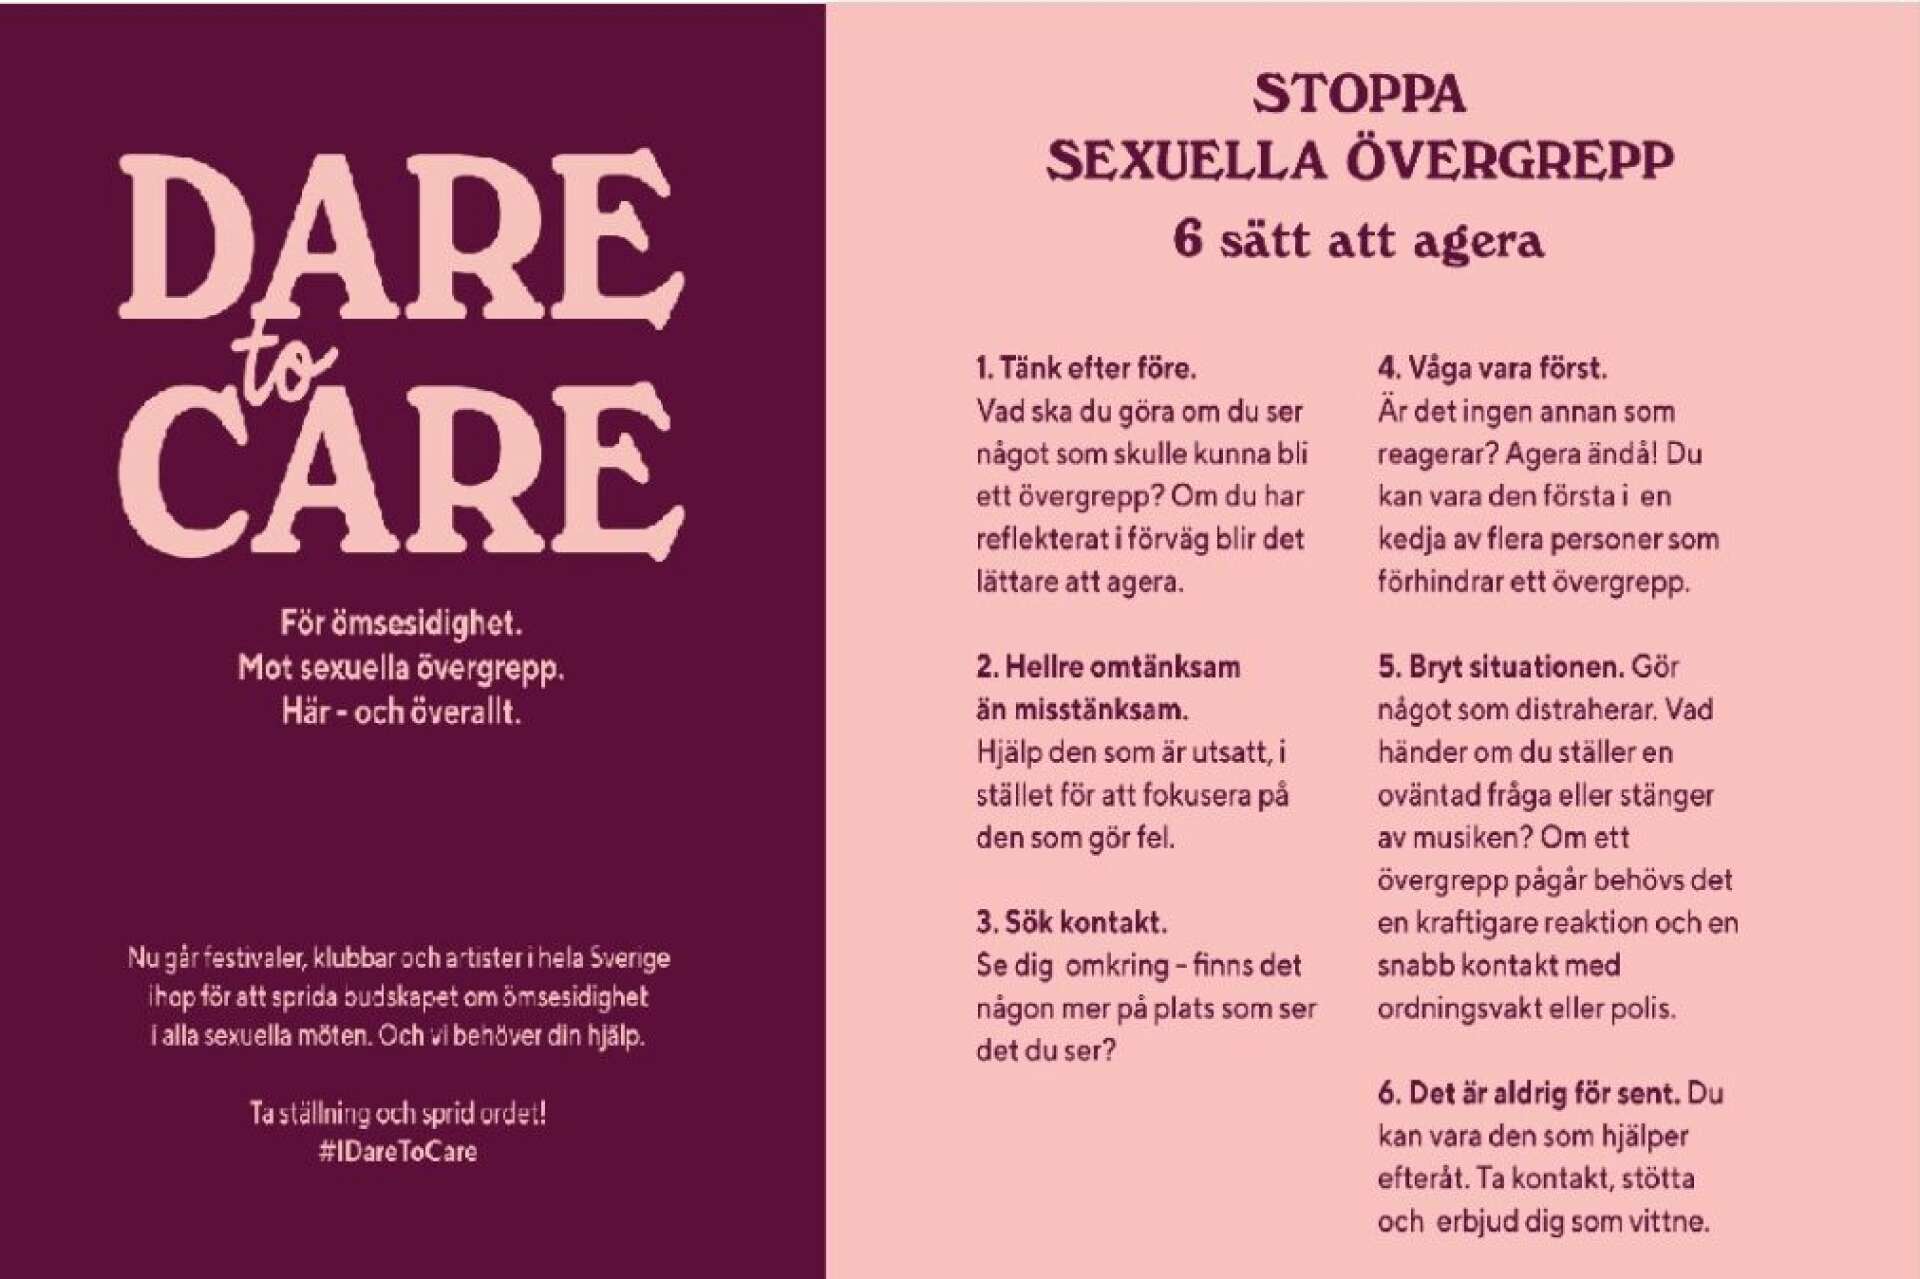 Utöver vägledning för arrangörer, tillhandahåller det sexualbrottsförebyggande samverkansprojektet ”Dare to care” även broschyrer och guider riktat till besökare. 